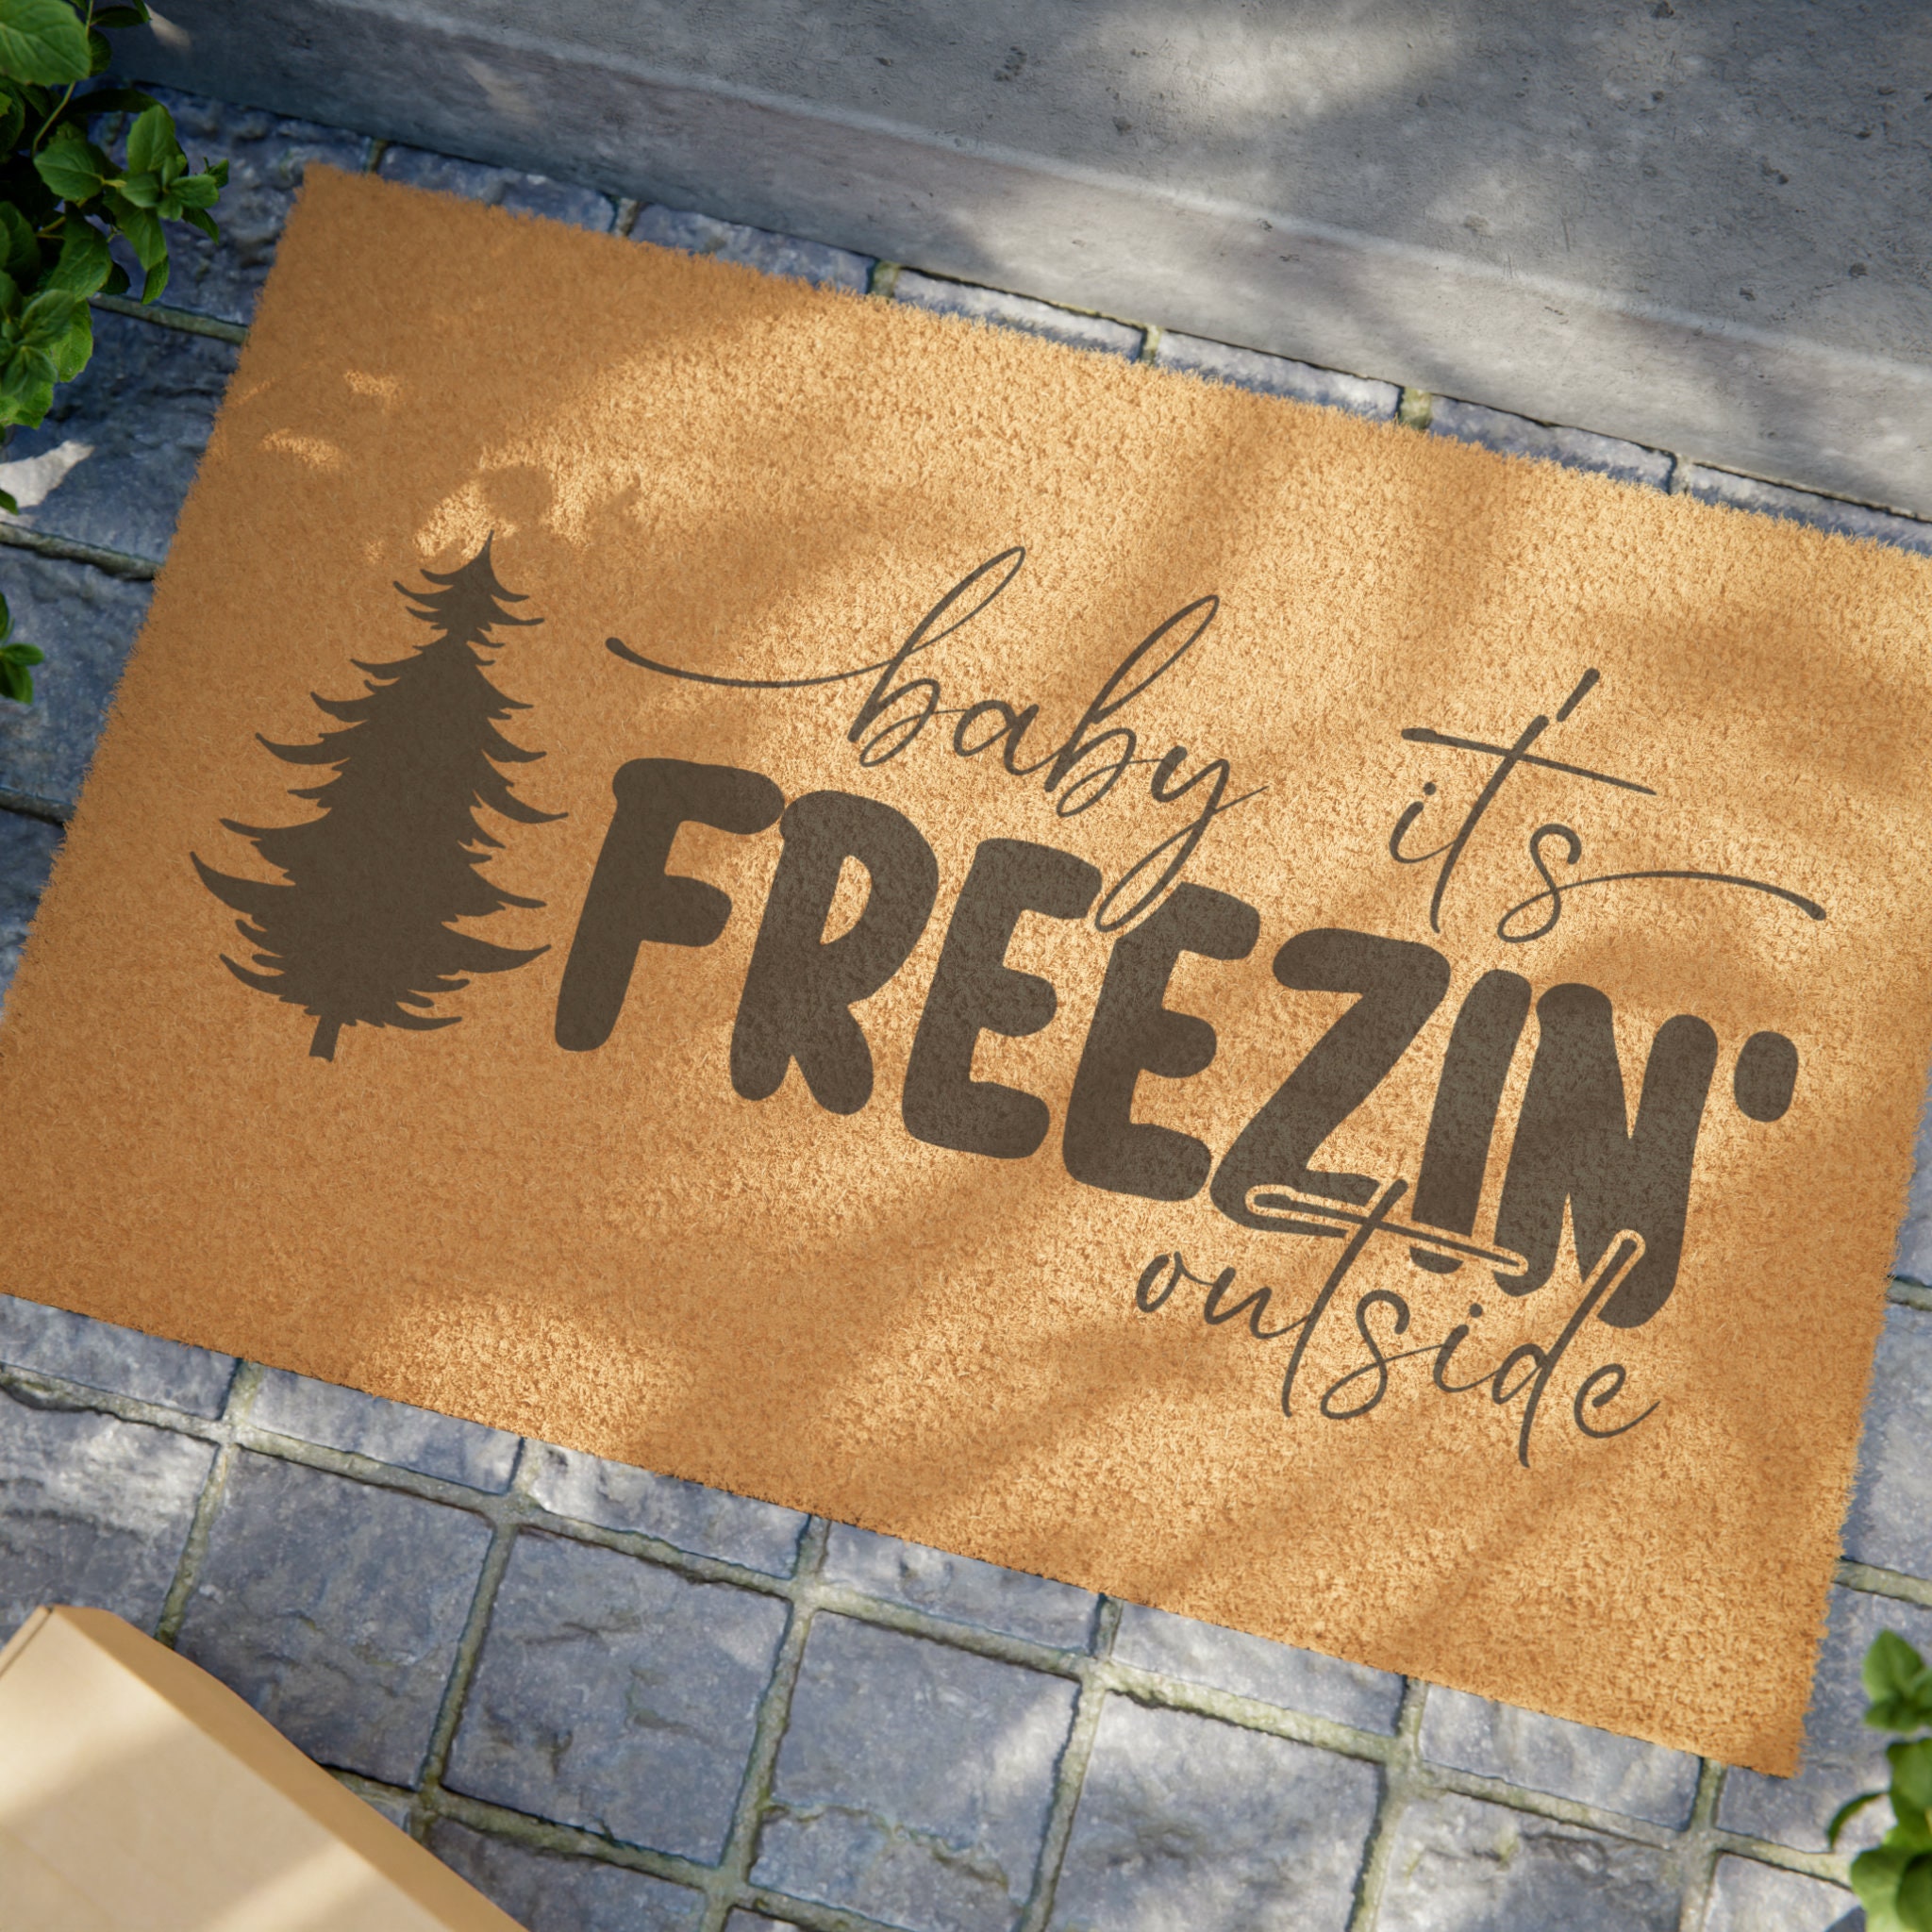 Baby It's Freezin Outside Coir Doormat - Outdoor Welcome Mat